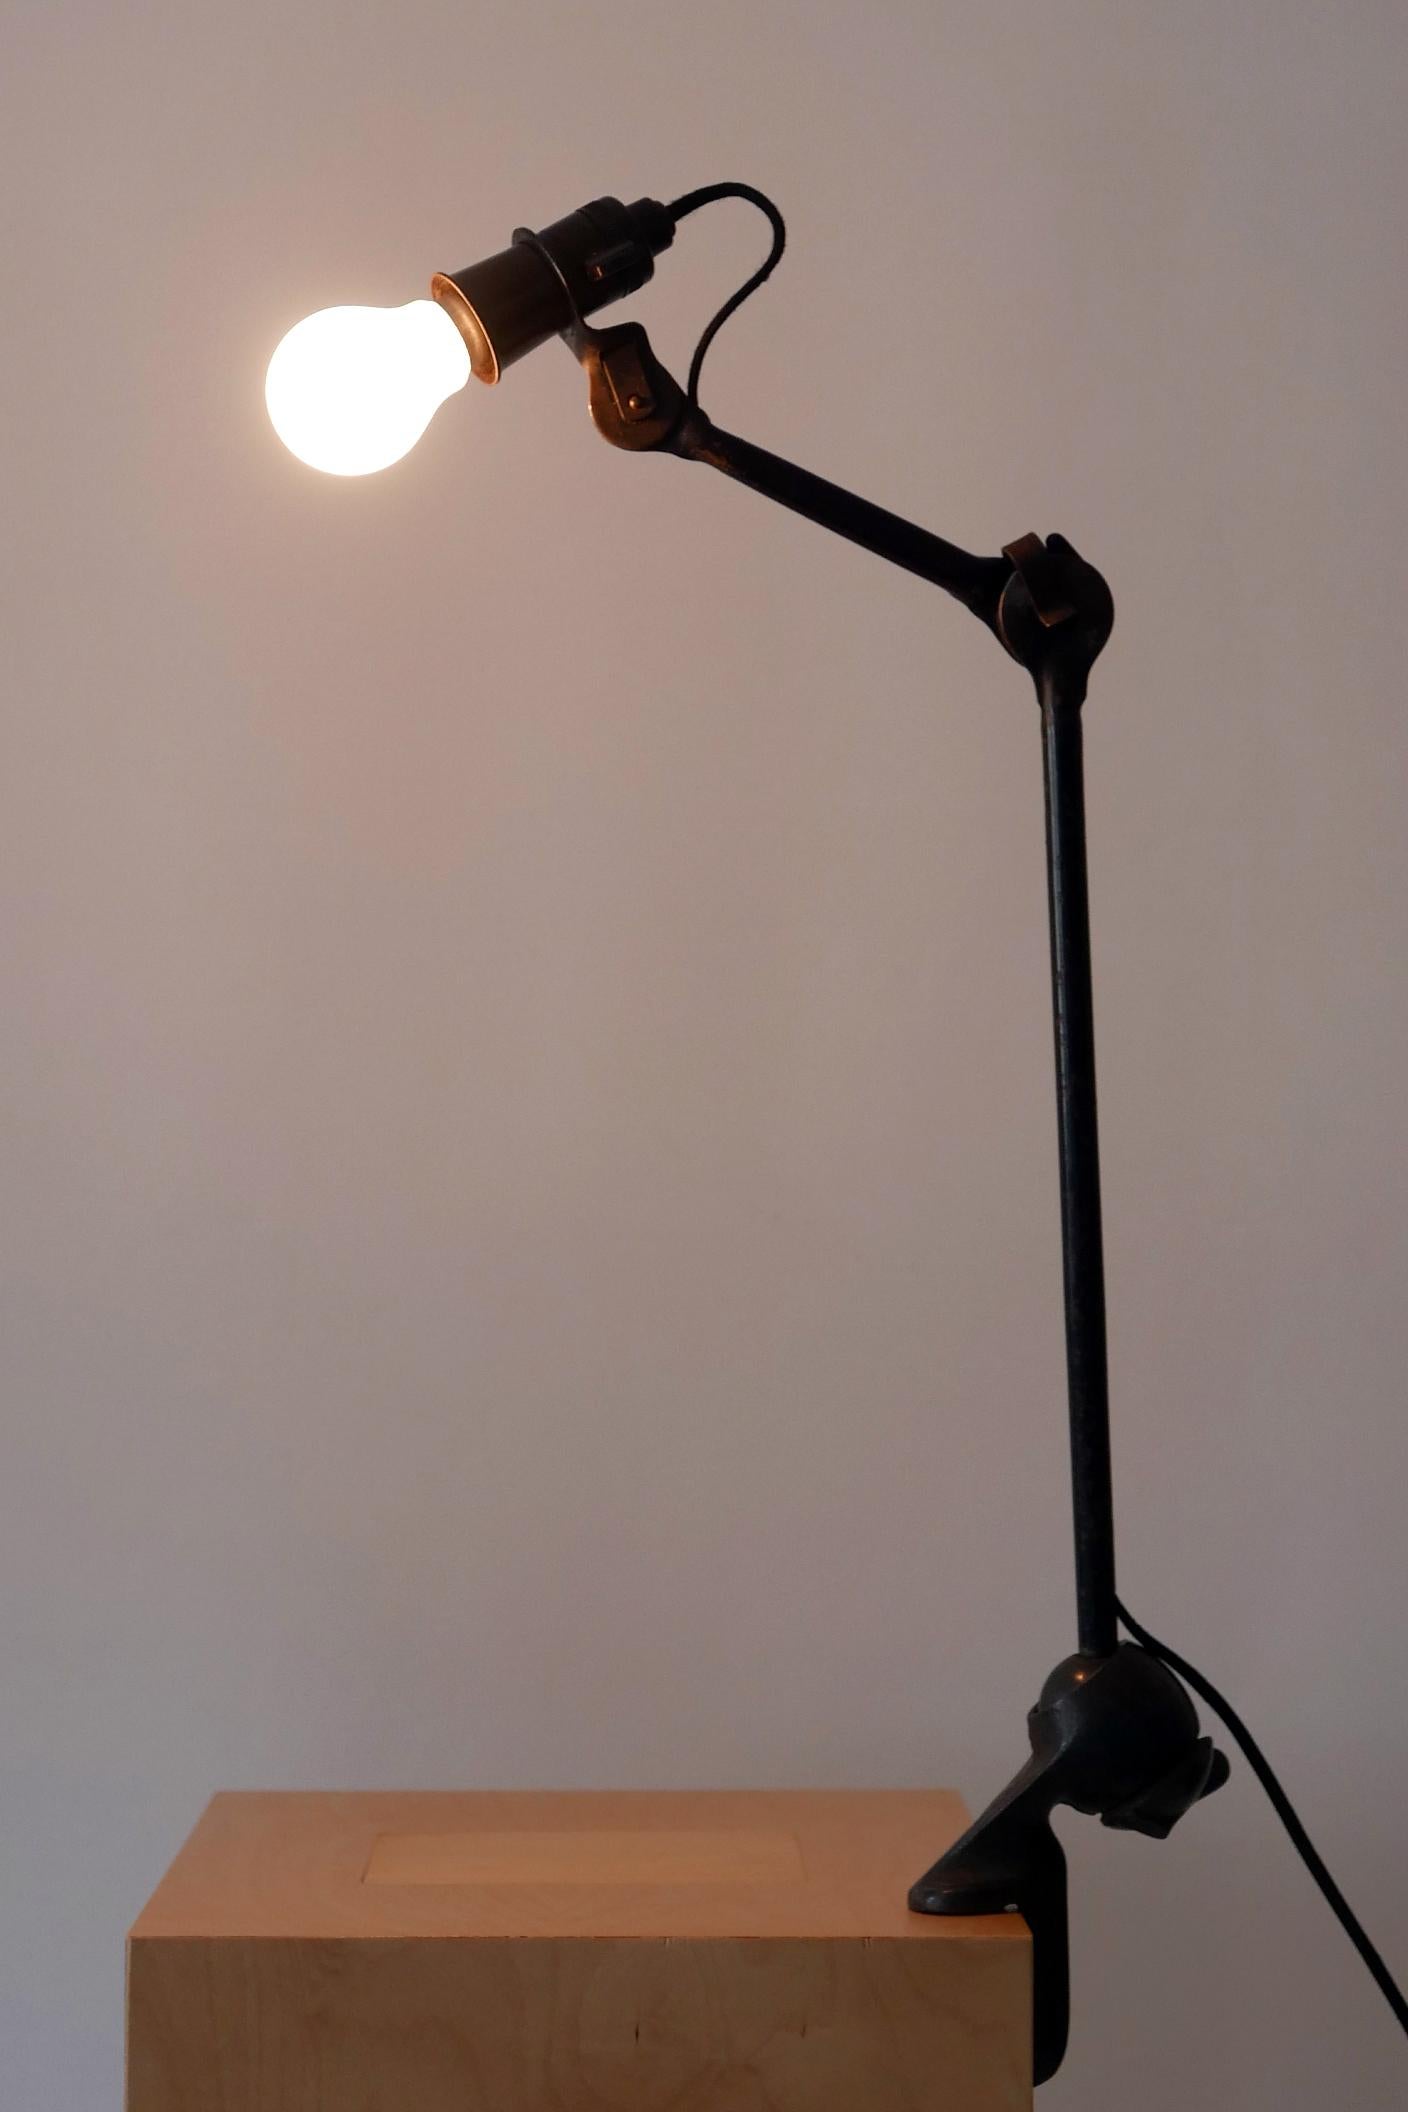 Modernist Task Light or Clamp Table Lamp by Bernard-Albin Gras for Gras, 1920s For Sale 6